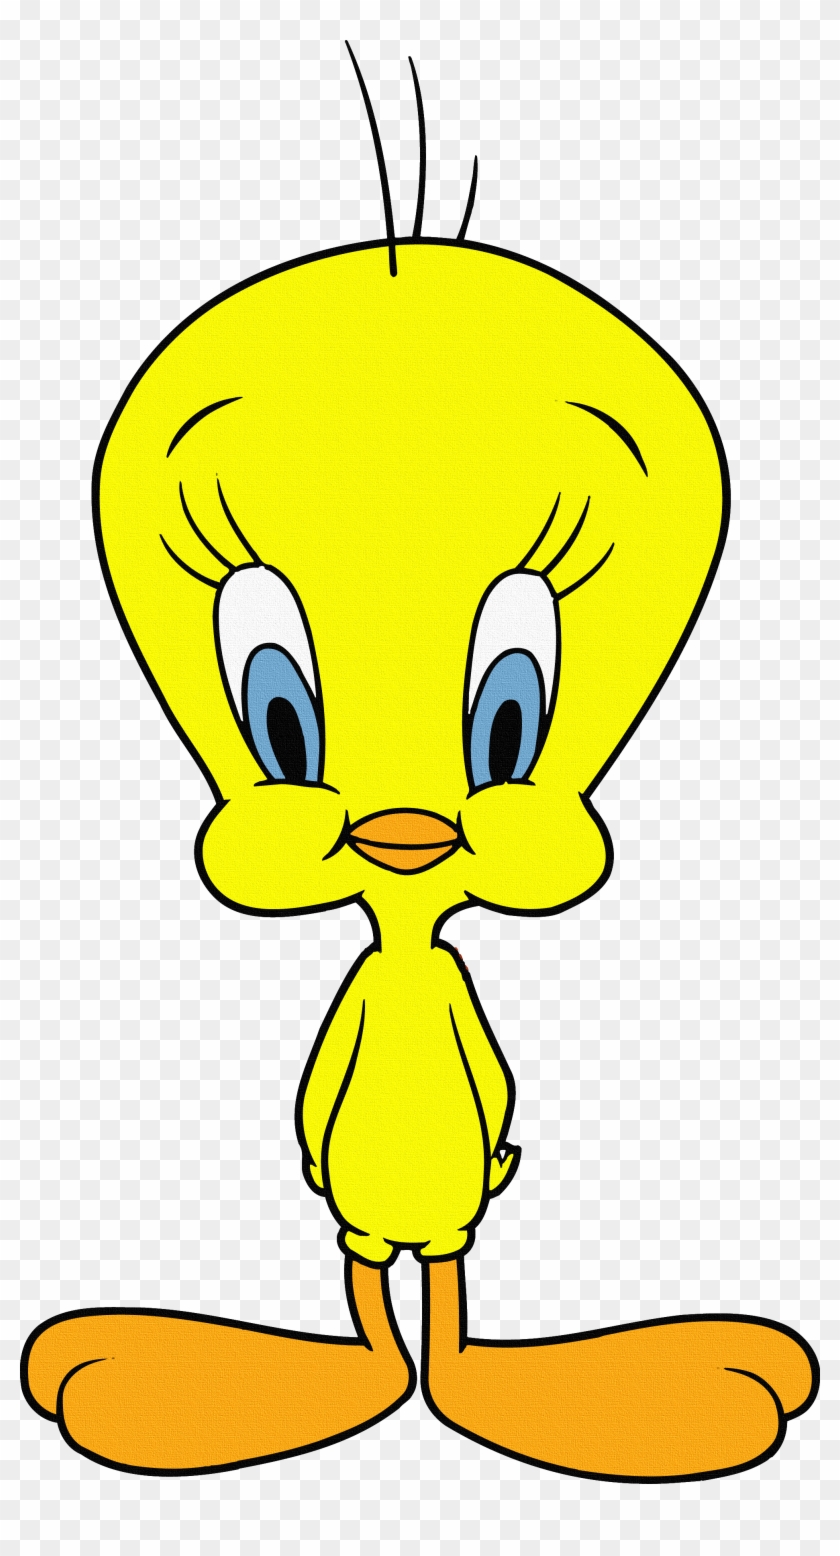 Şaşkın Bakışlı Tweety Kuş - Looney Toons Tweety Bird #575336